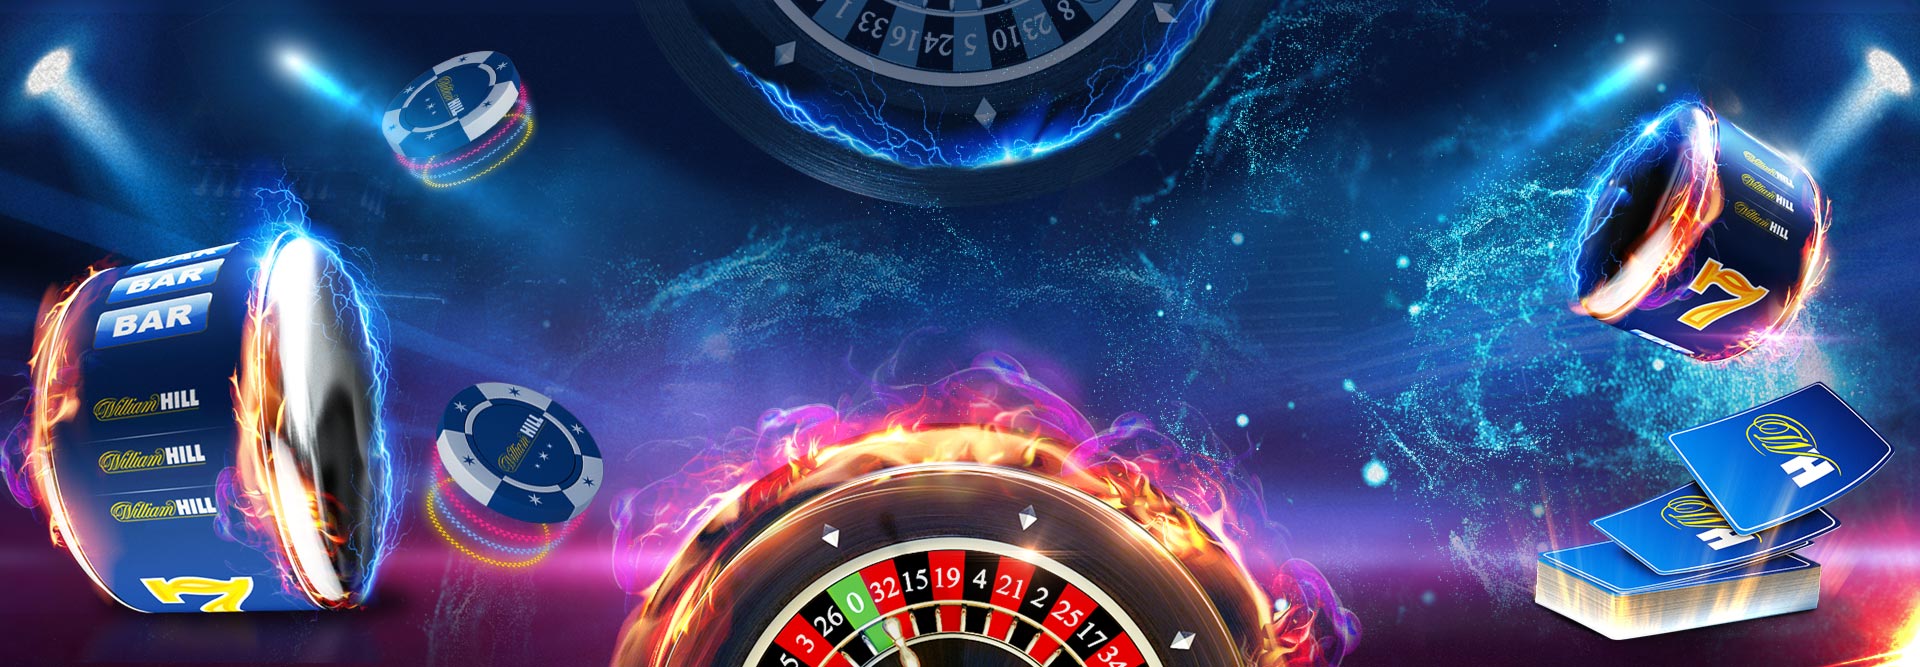 As melhores slot machines de bitcoin para jogar no casino de bitcoin do falcão vermelho